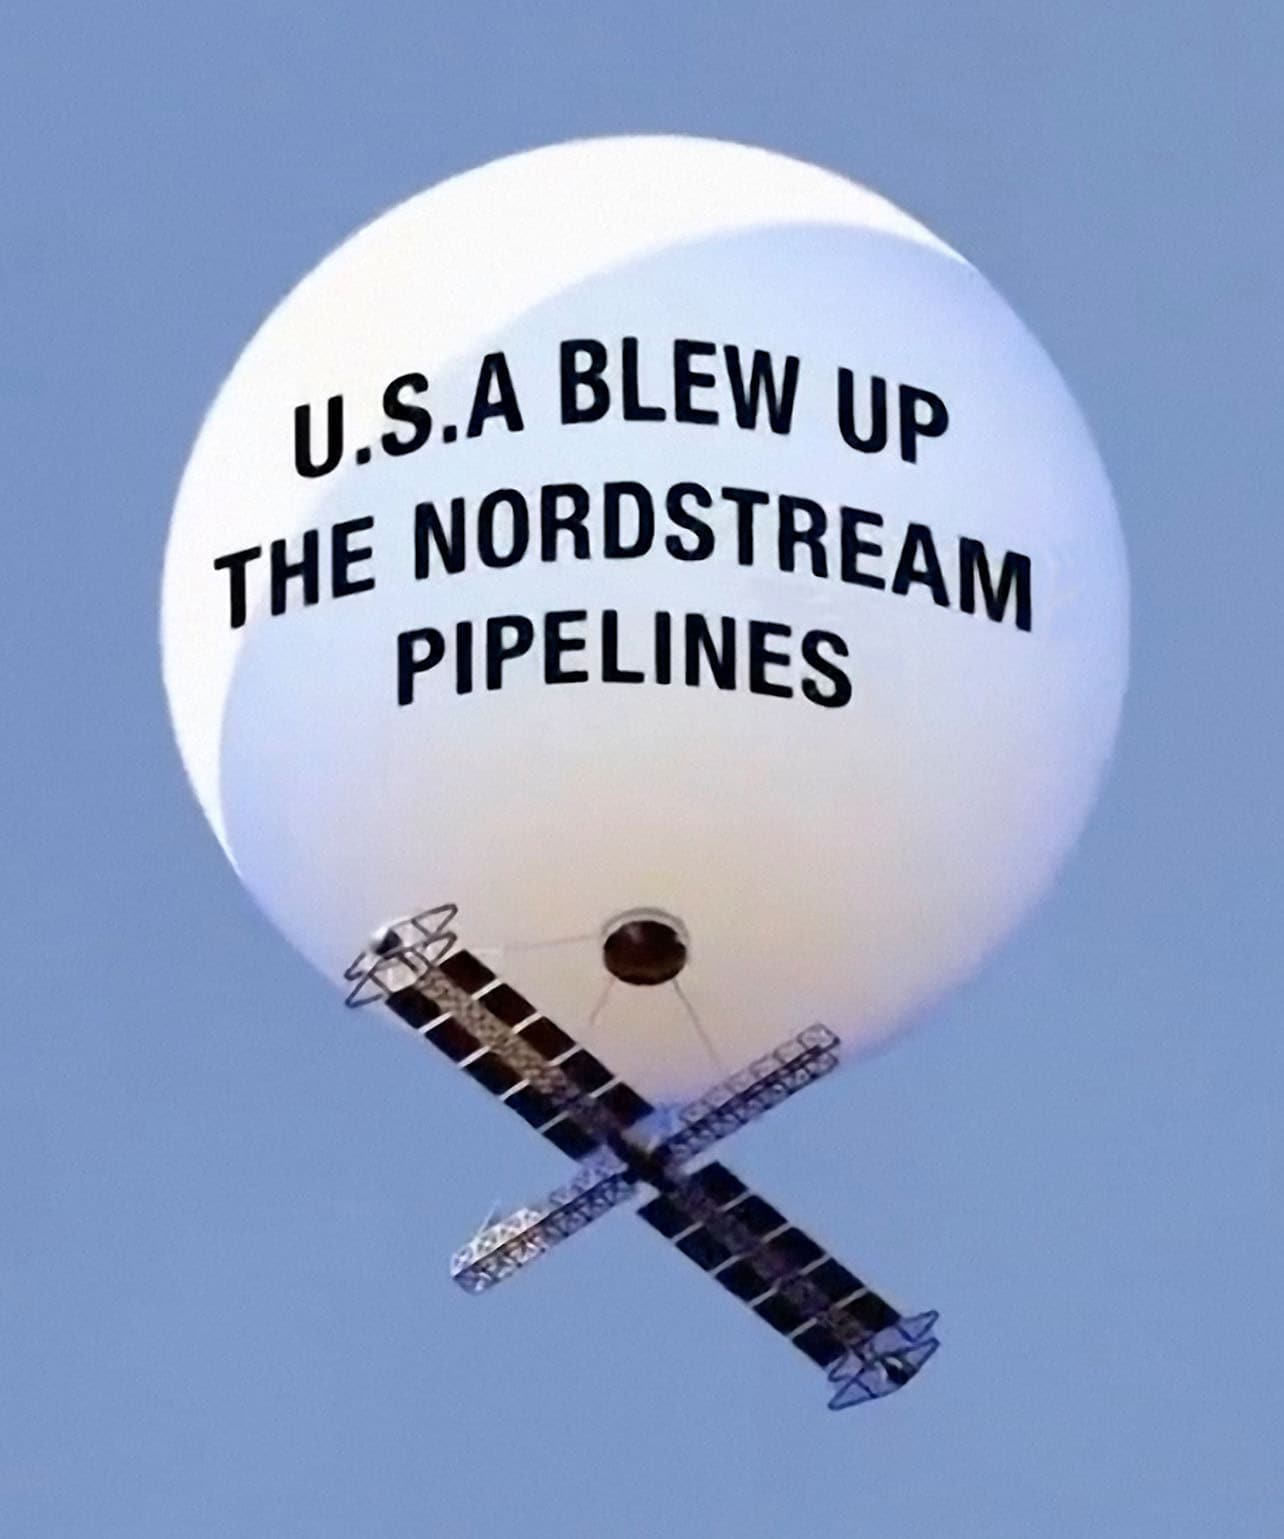 USA Nordstream Sprengung 2022 Ufos Alien China Ballon